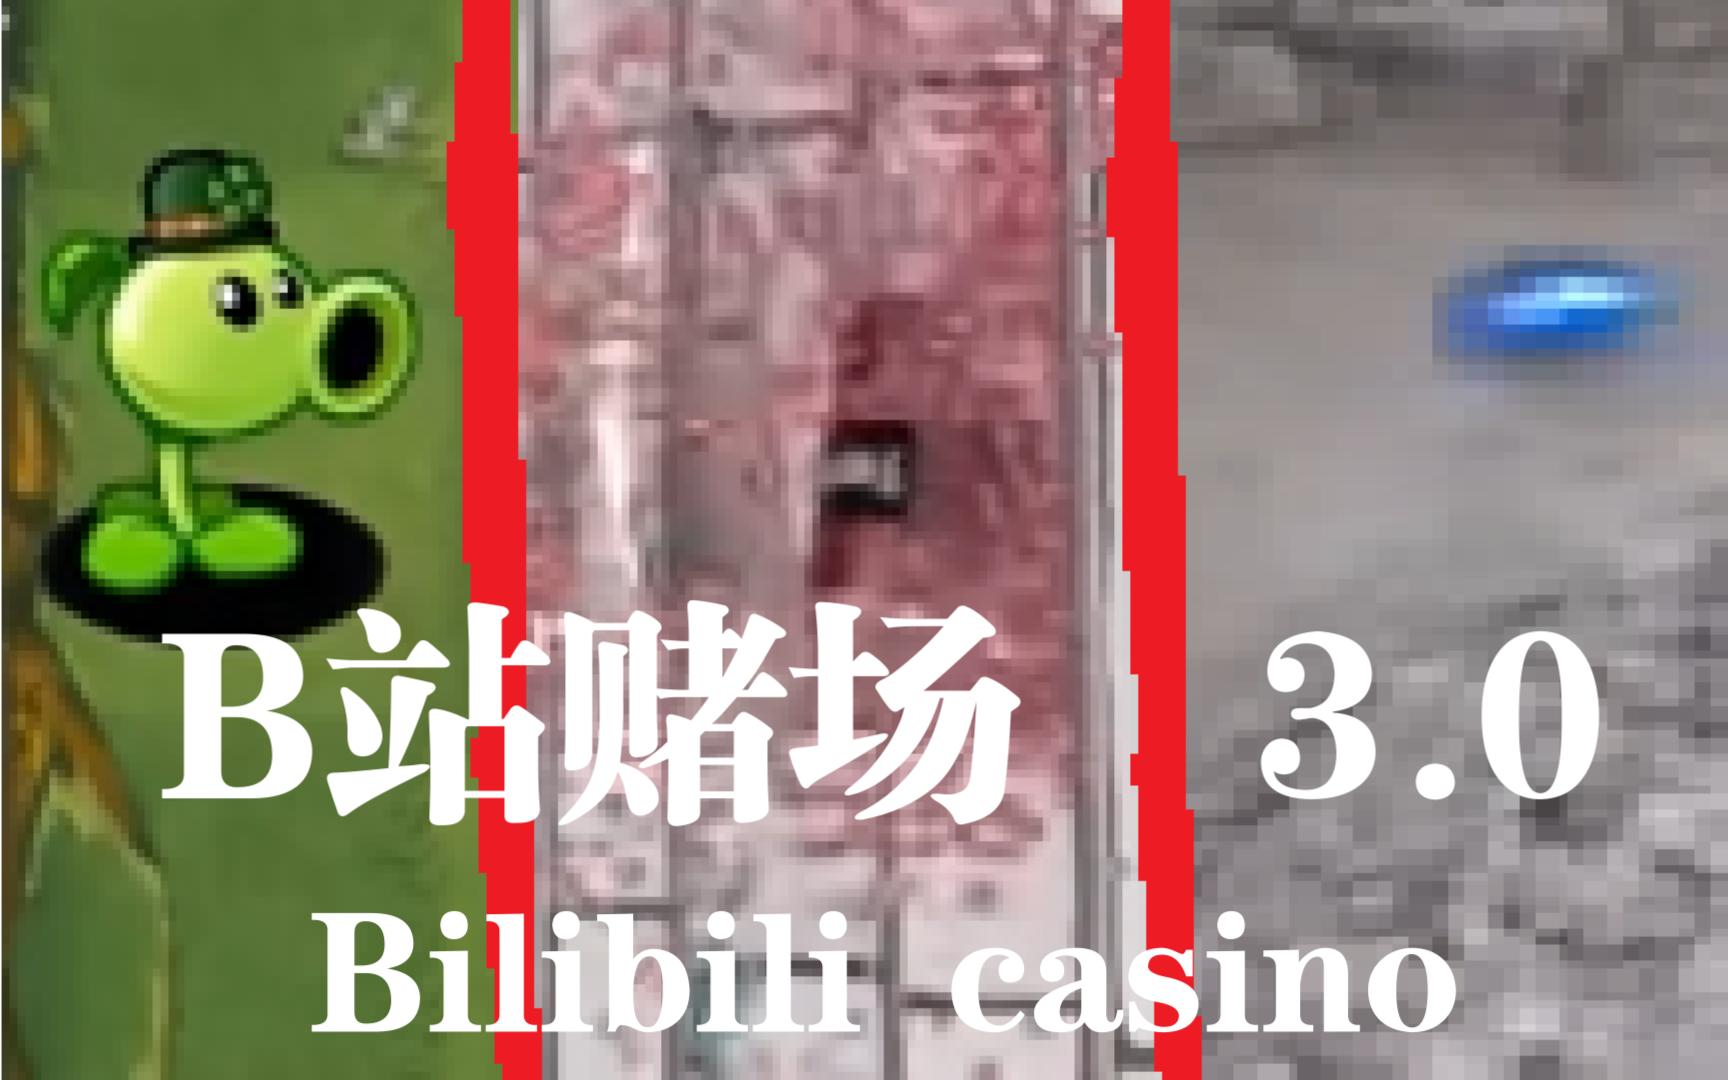 盘点BiliBili的3大赌场  [ 3.0 ]  !!!!!